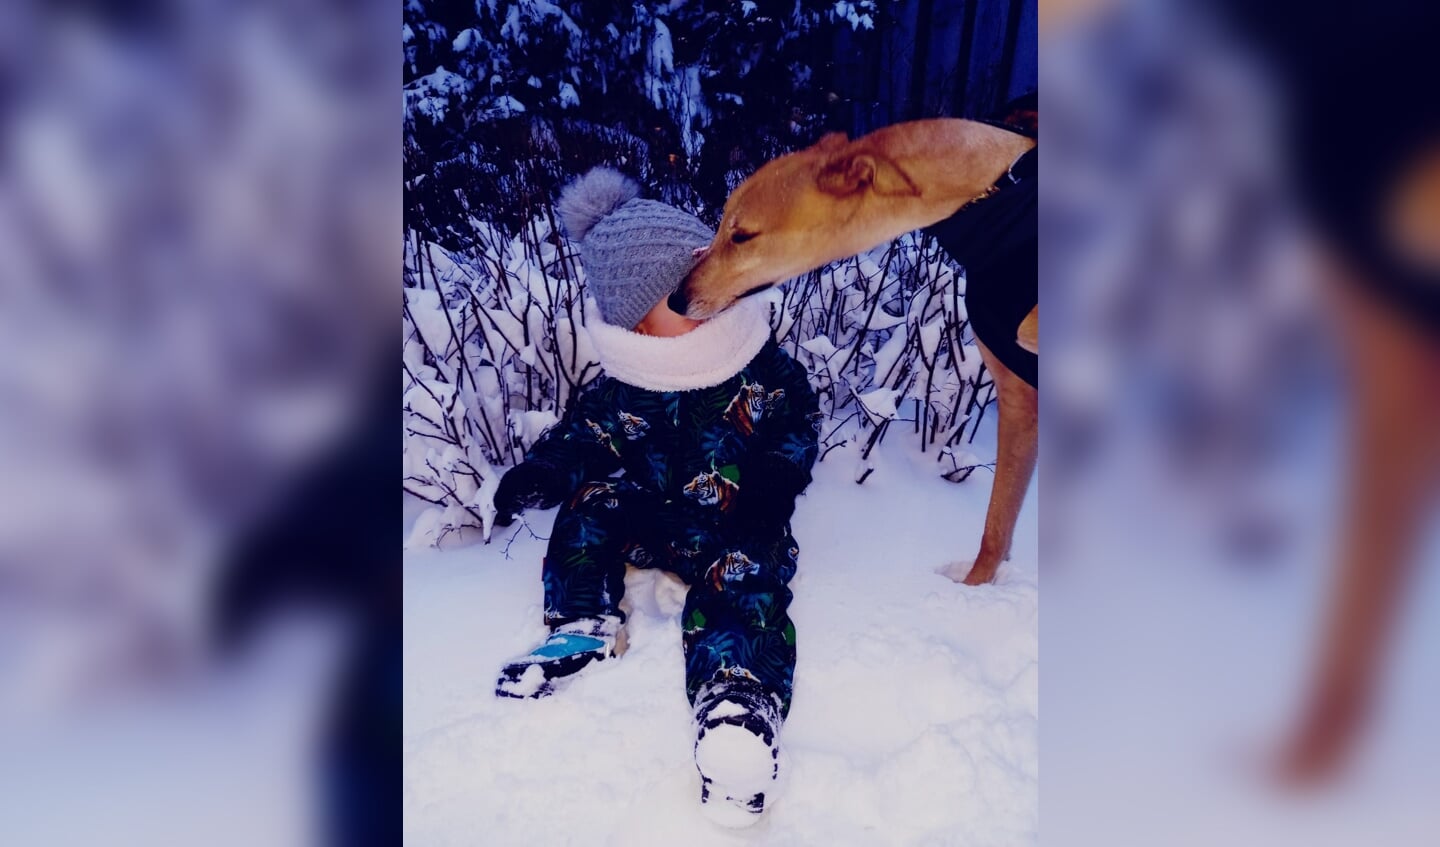 Mijn galgo Ben kwam tijdens de wandeling in de sneeuw, een heel lief klein meisje tegen. Eerst even haar begroeten, hoor!